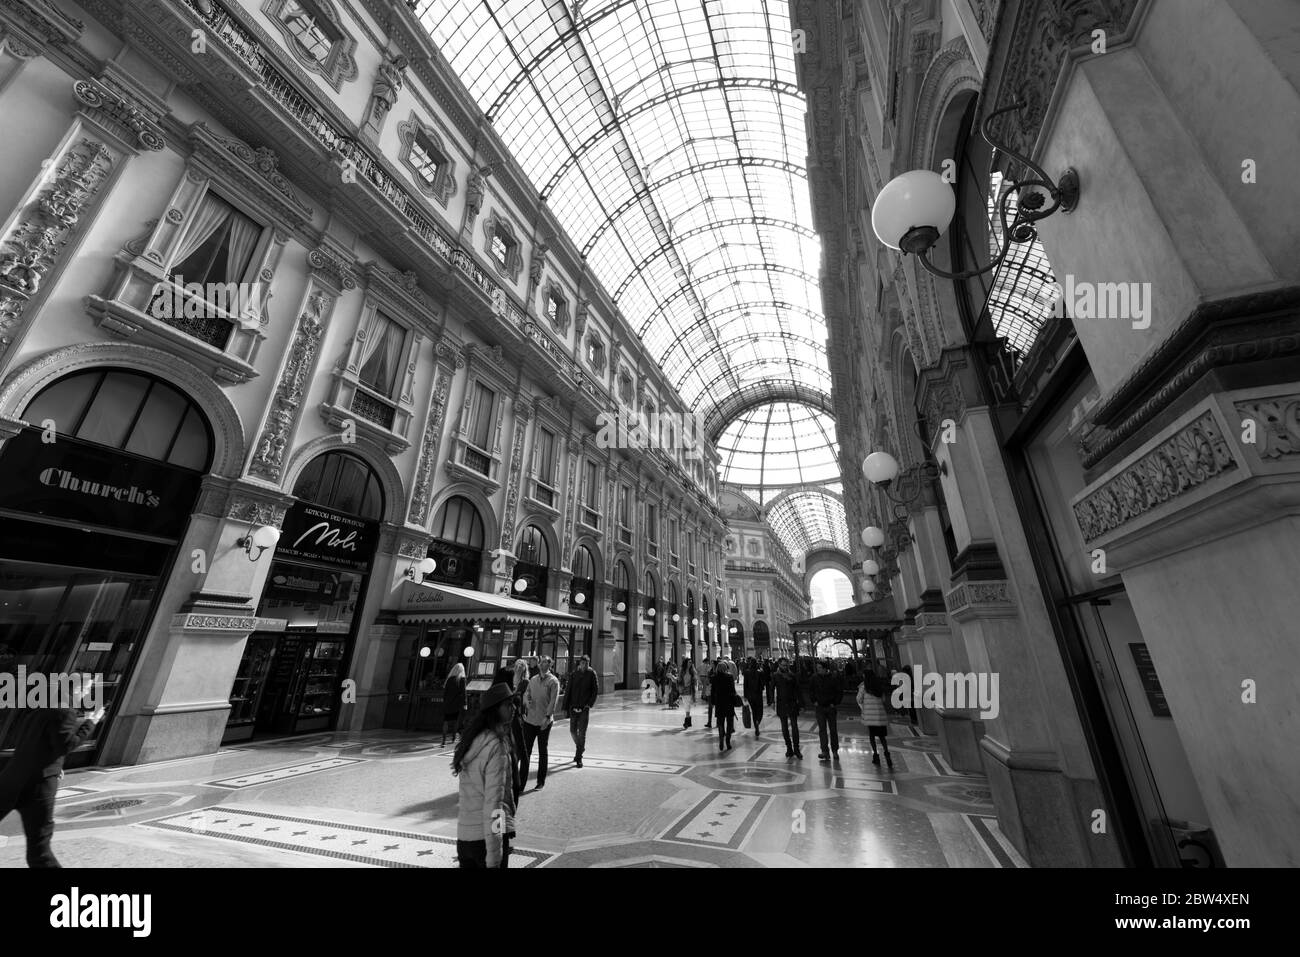 MAILAND, ITALIEN - 16, MÄRZ 2018: Schwarz-weiß-Bild des Innenraums der Galleria Vittorio Emanuele II, einem alten Einkaufszentrum in Mailand, Italien Stockfoto